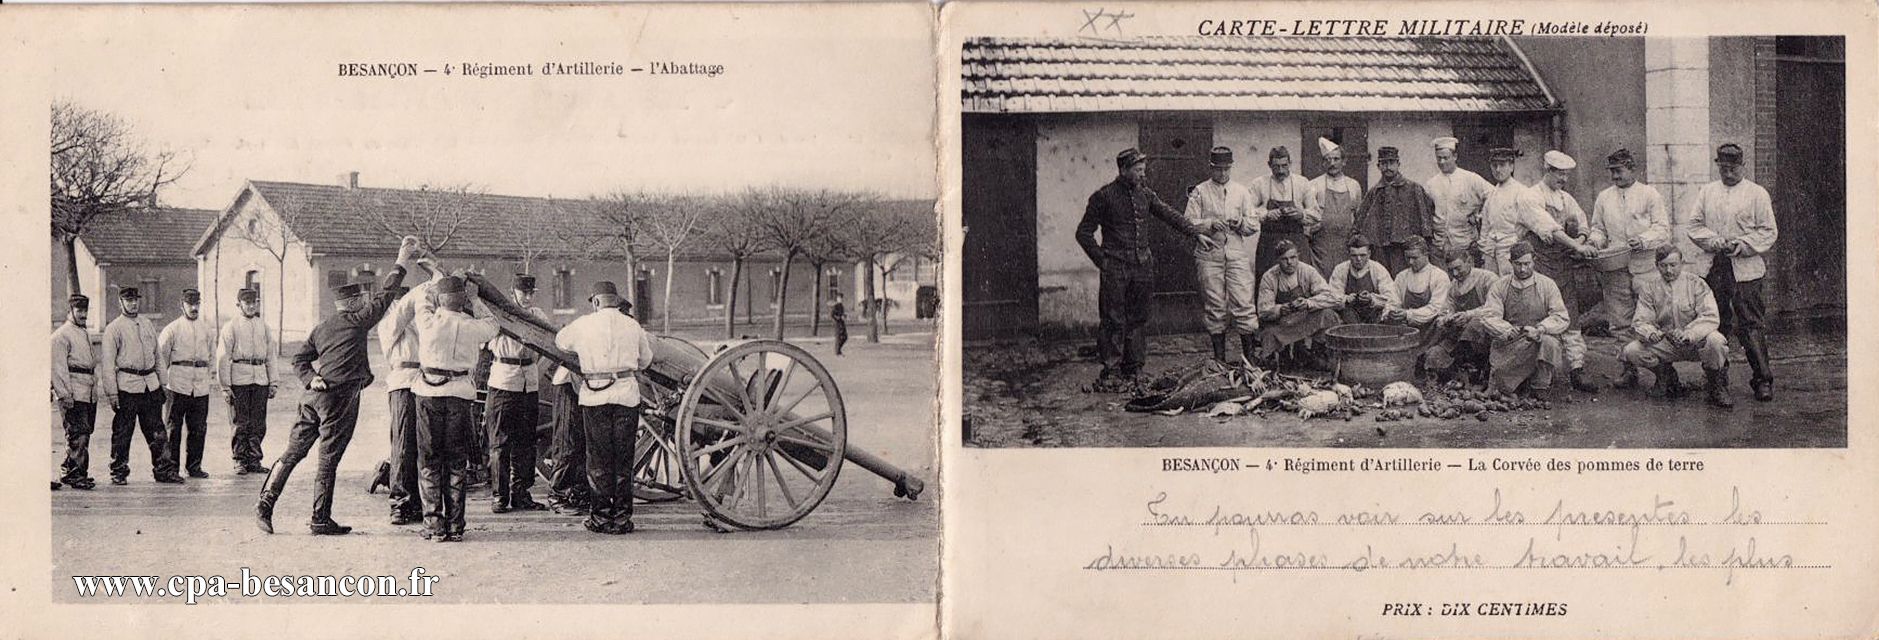 CARTE-LETTRE MILITAIRE - BESANÇON - 4e Régiment d'Artillerie - L'Abattage & 4e Régiment d'Artillerie - La Corvée des pommes de terre